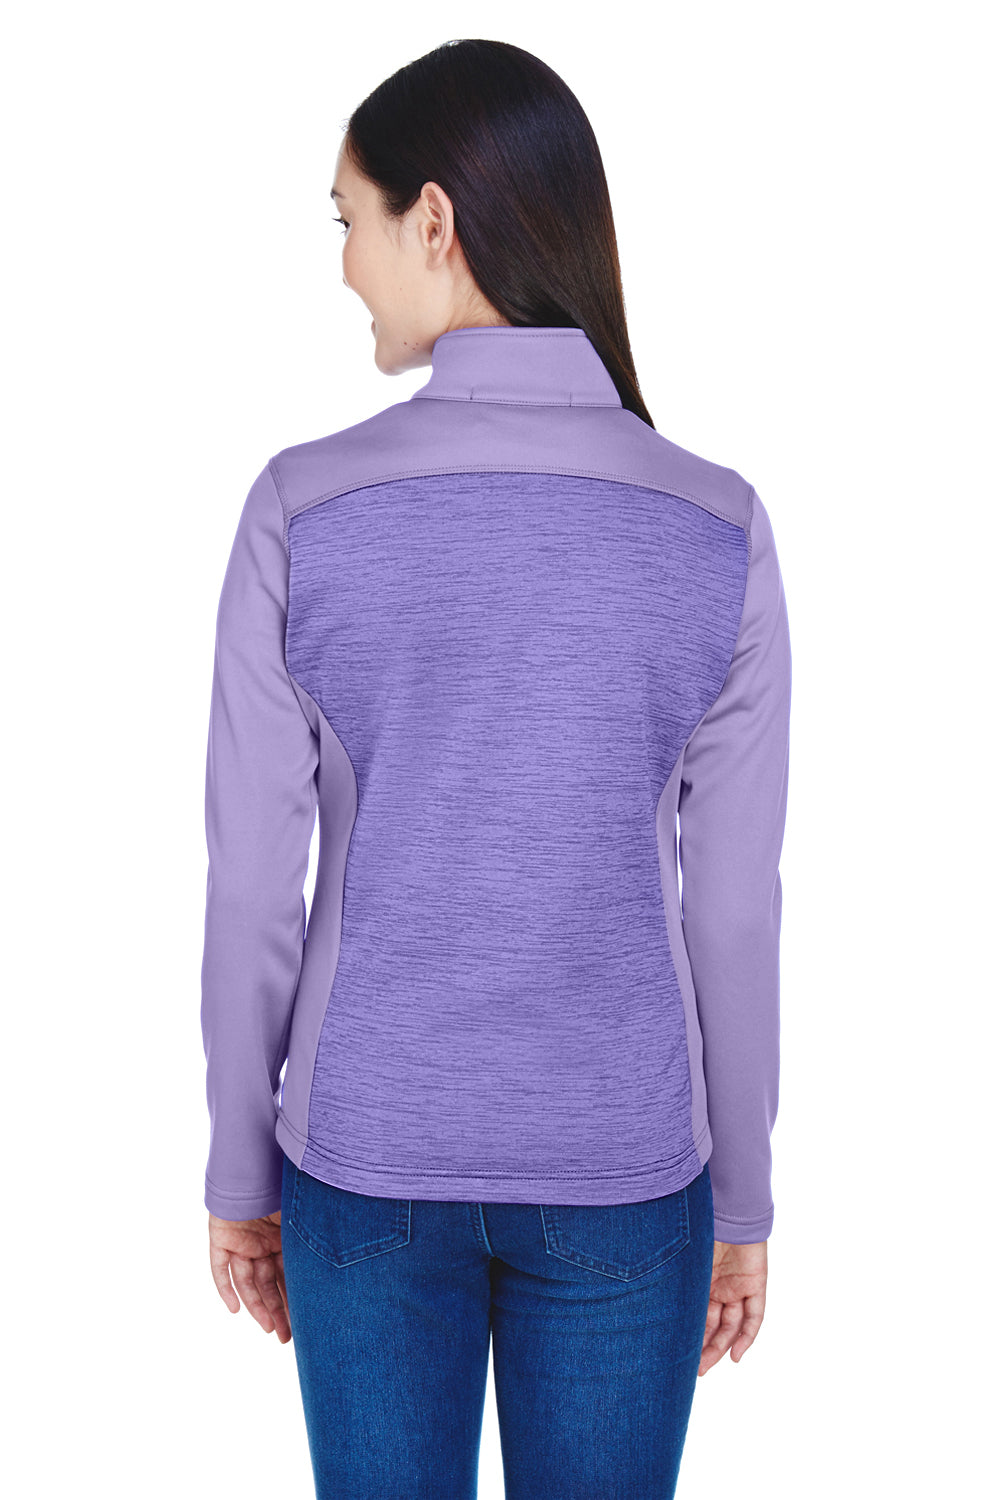 Devon & Jones DG796W Womens Newbury Fleece Full Zip Sweatshirt Purple Back